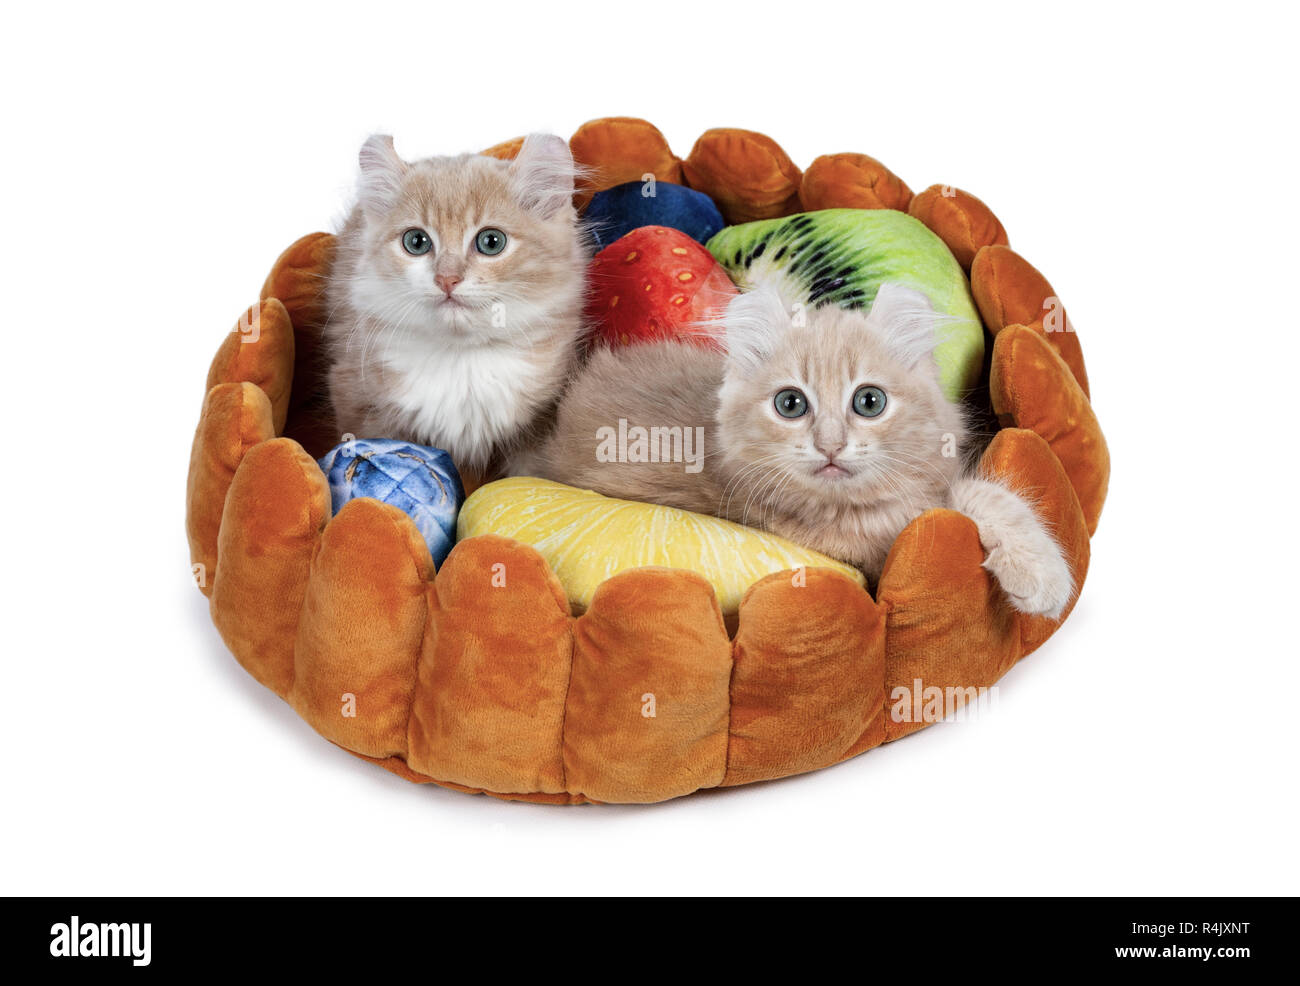 Due crema con bianco American Curl gatto gattini seduta in finta crostata di frutta. Guardando la telecamera con il Grigio / Blue Eyes. Isolato su sfondo bianco. Foto Stock